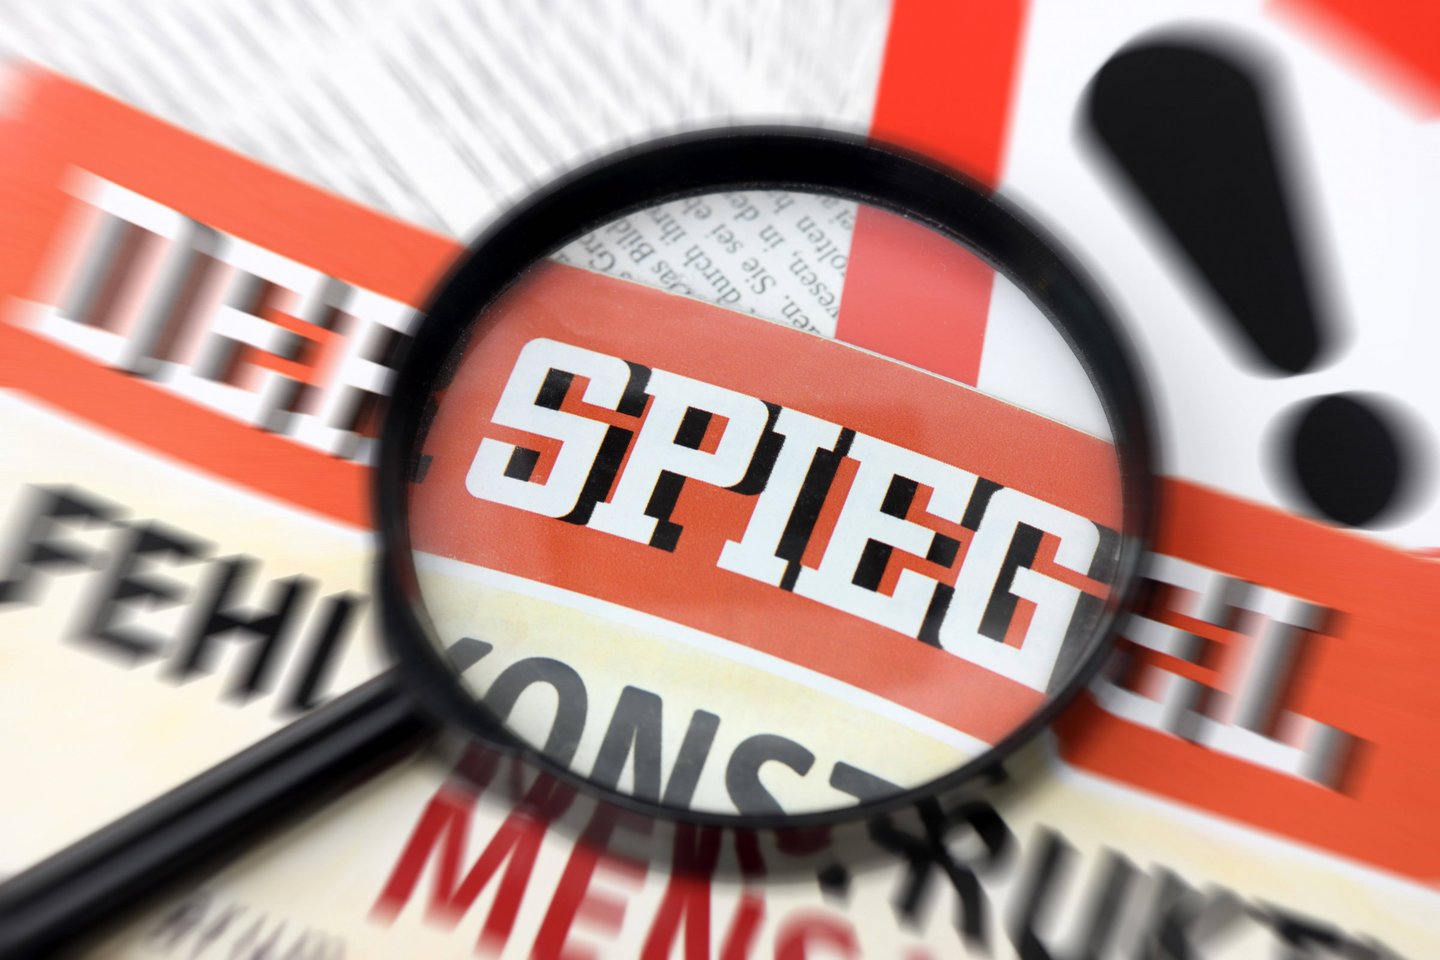  Šių metų gruodžio 19 dieną „Der Spiegel“ apstulbinožiniasklaidos pasaulį, atskleisdęs, kad vienas iš jo žurnalistų, pelnęs daug apdovanojimų, daugelį metų klastojo istorijas. <br> Imago/Scanpix nuotr.